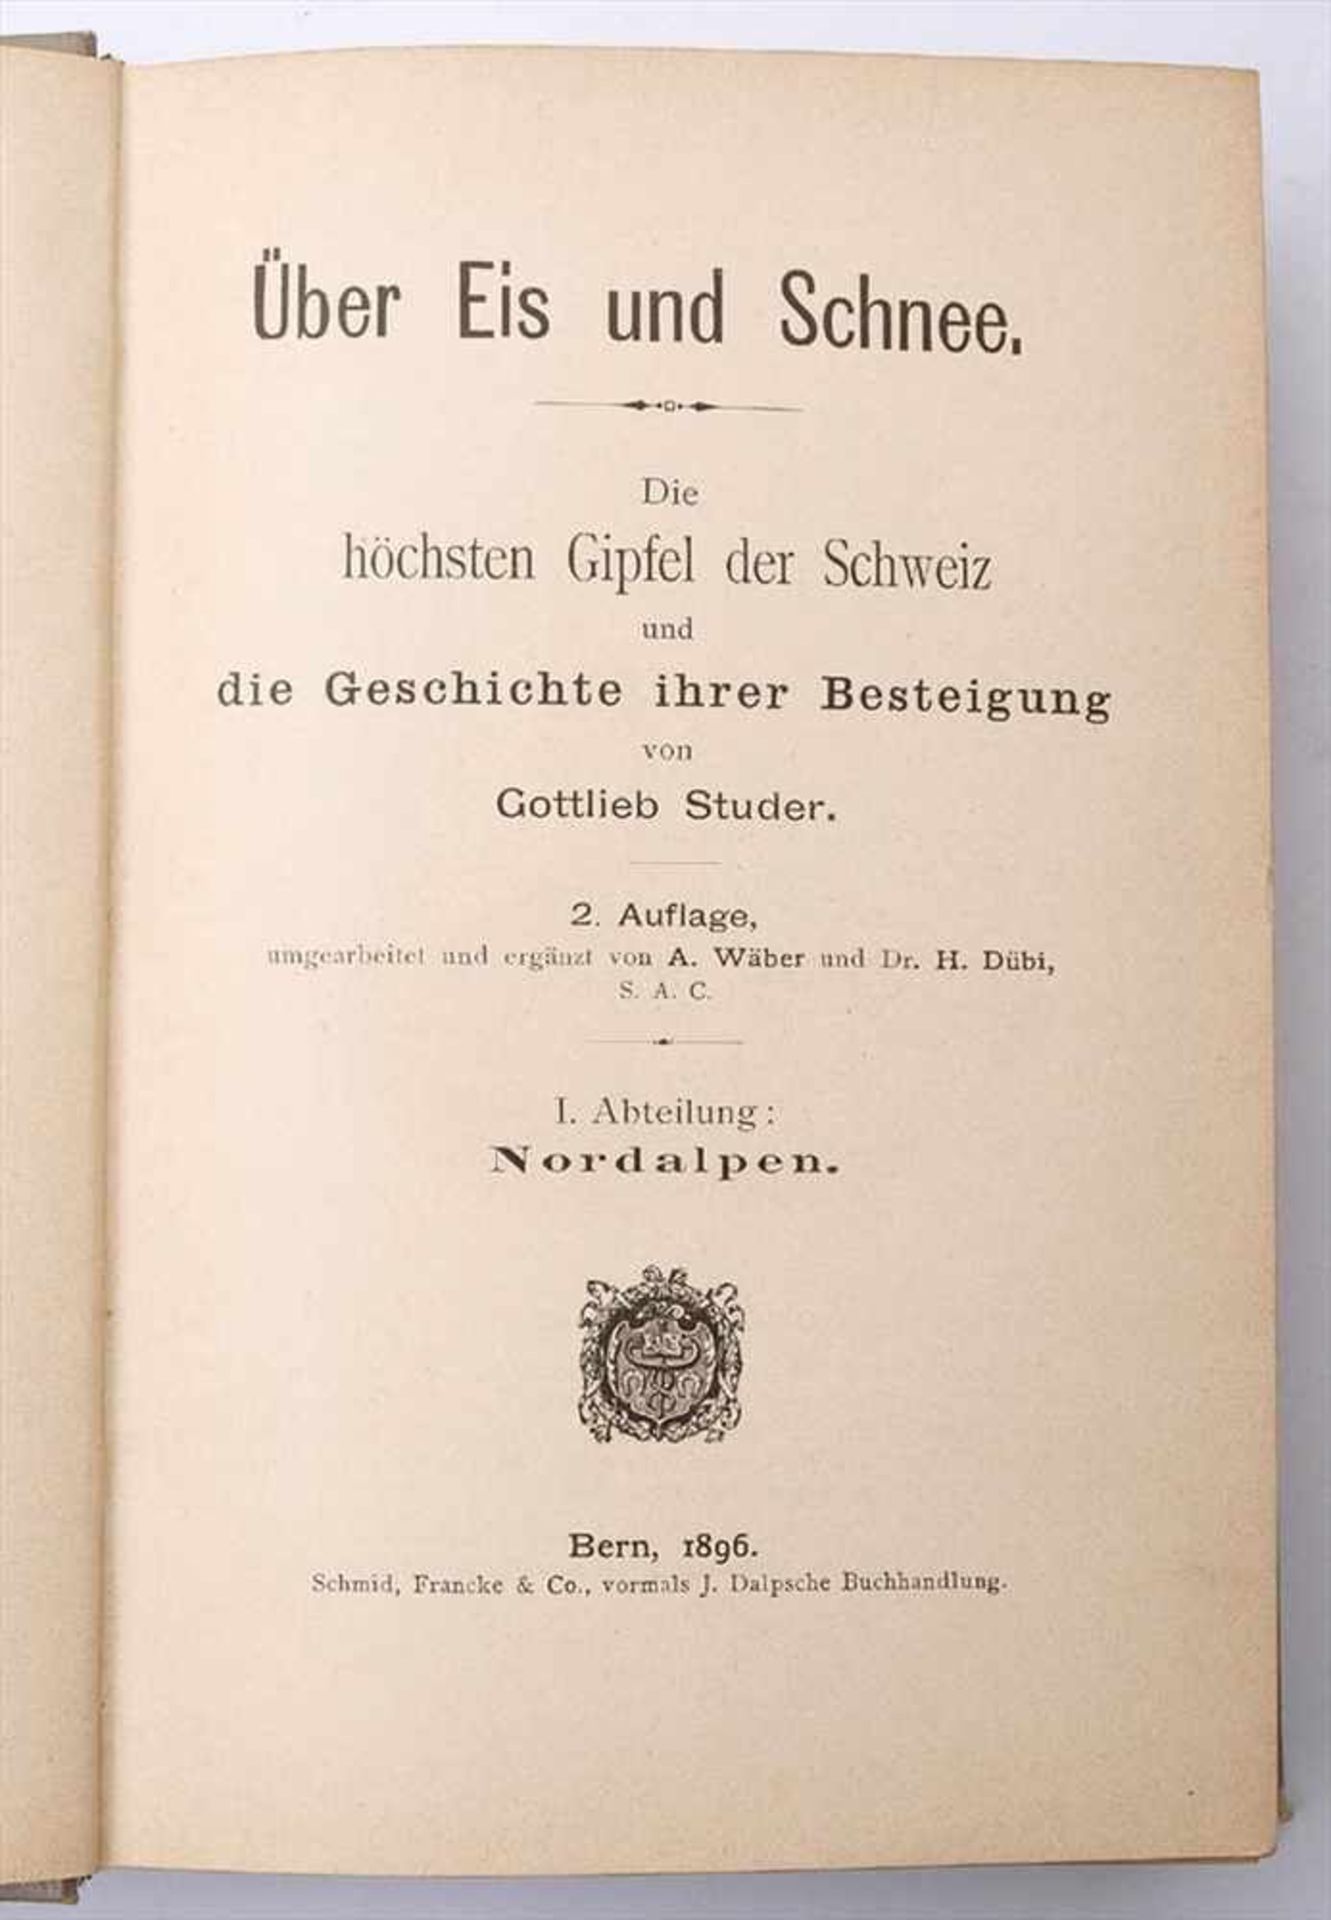 Studer, Gottlieb: Über Eis und Schnee, Schmid, Franke & Co, Bern, 1896Zweite Auflage. Geprägter - Image 2 of 2